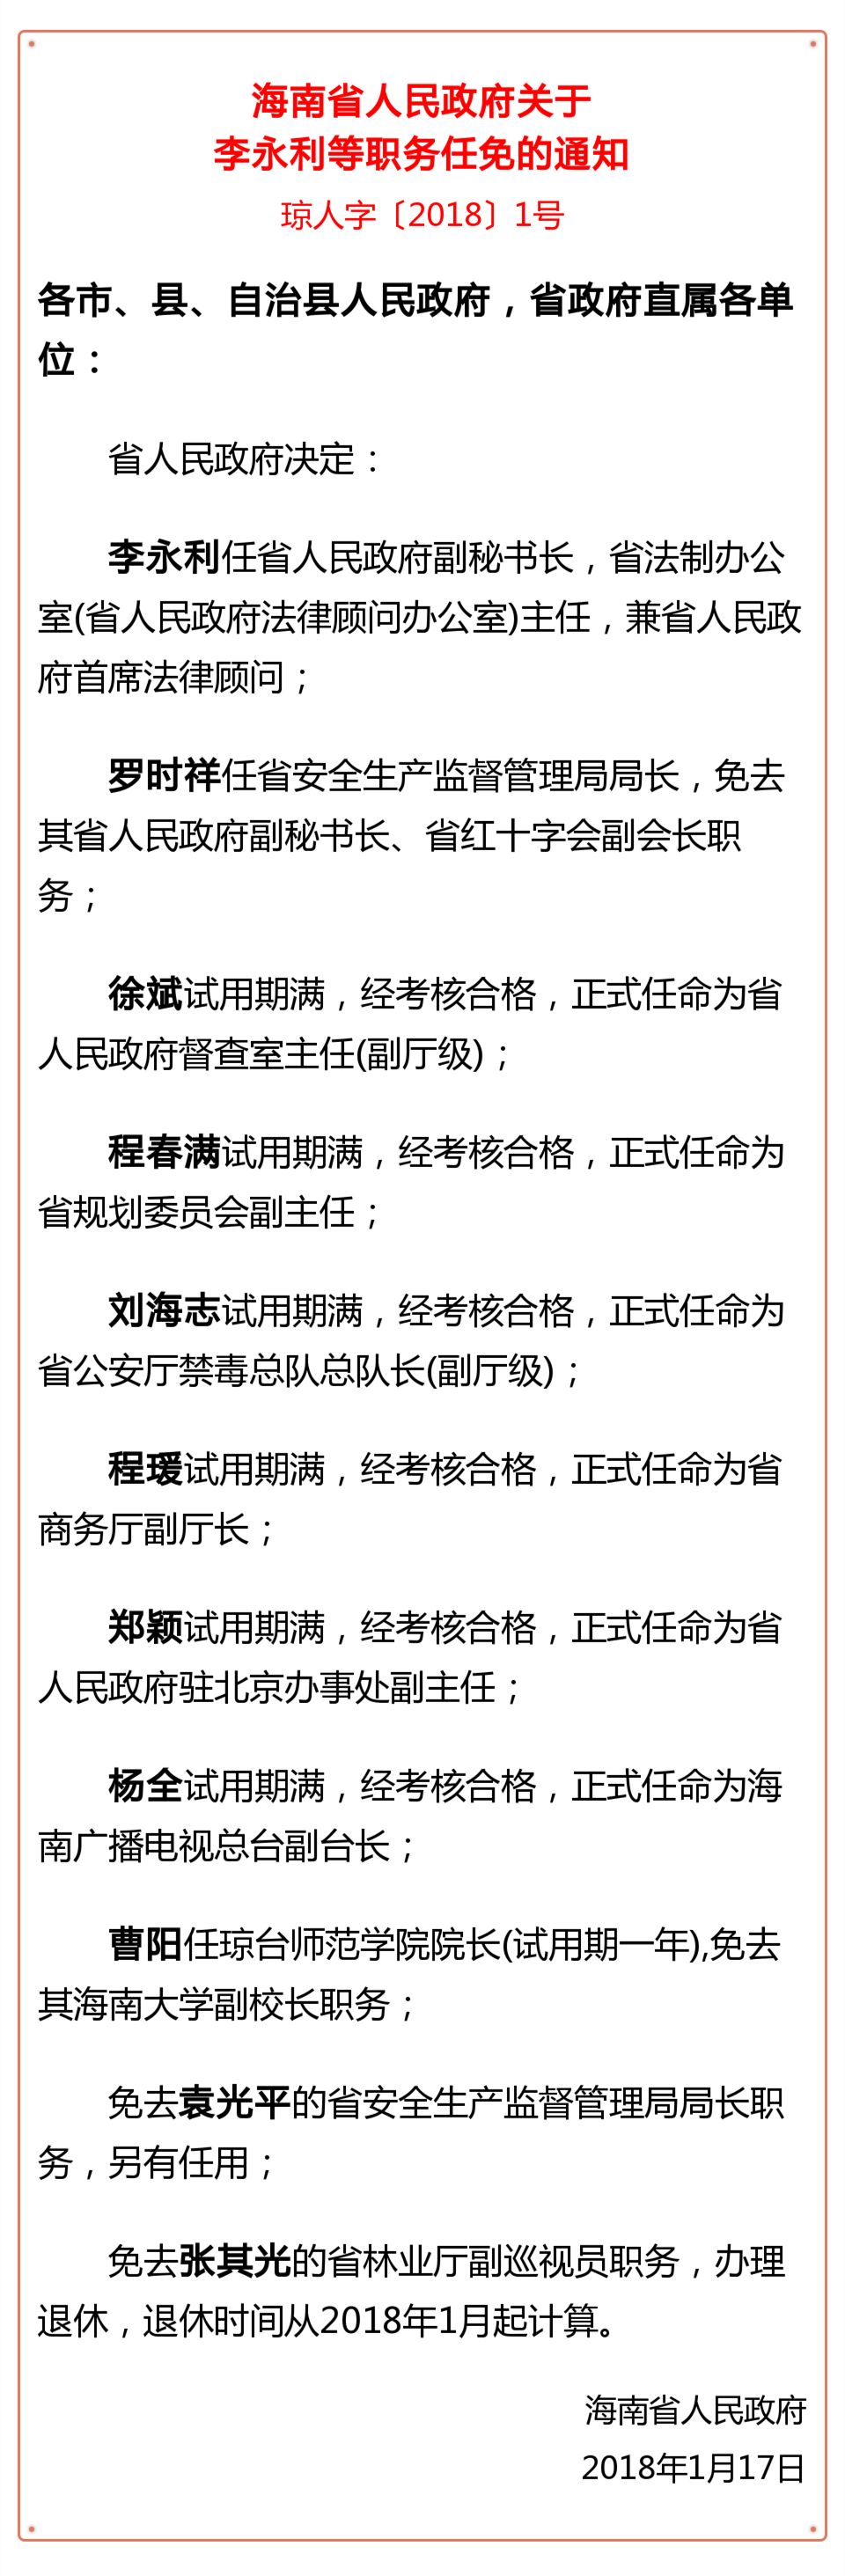 海南发布一批干部任免信息 李永利任省人民政府副秘书长